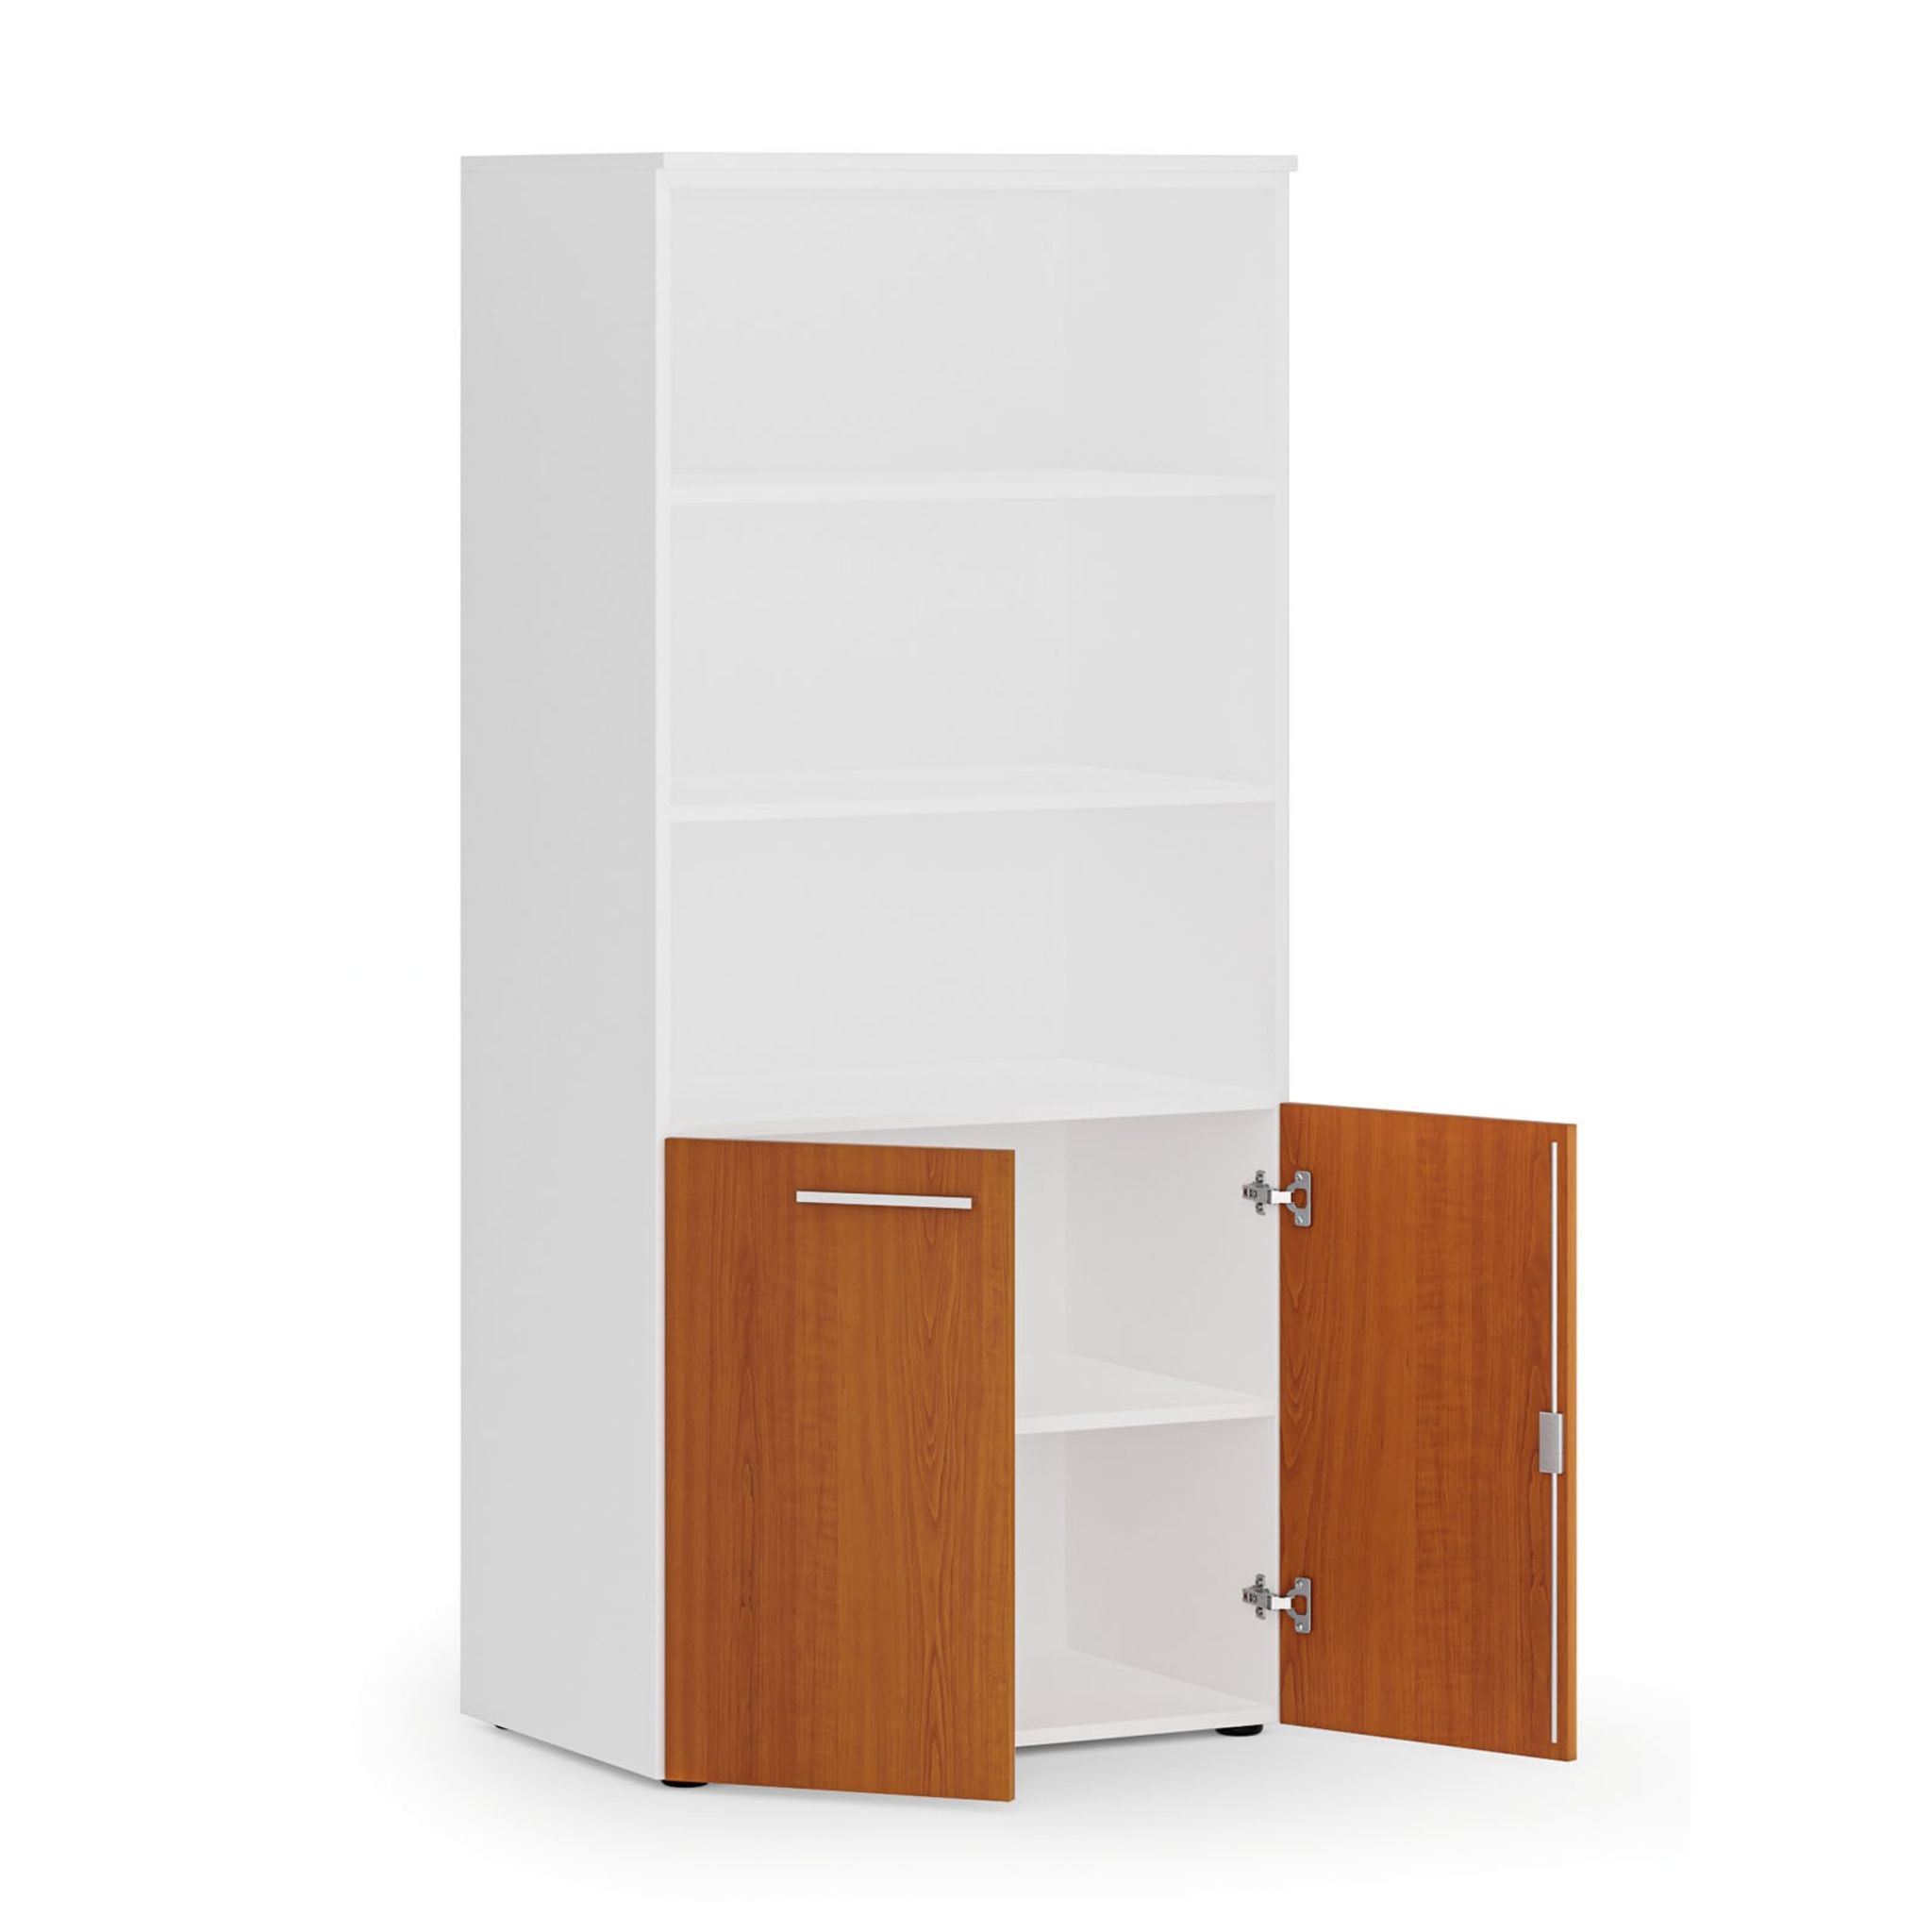 Kombinovaná kancelářská skříň PRIMO WHITE, nízké dveře, 1781 x 800 x 500 mm, bílá/třešeň